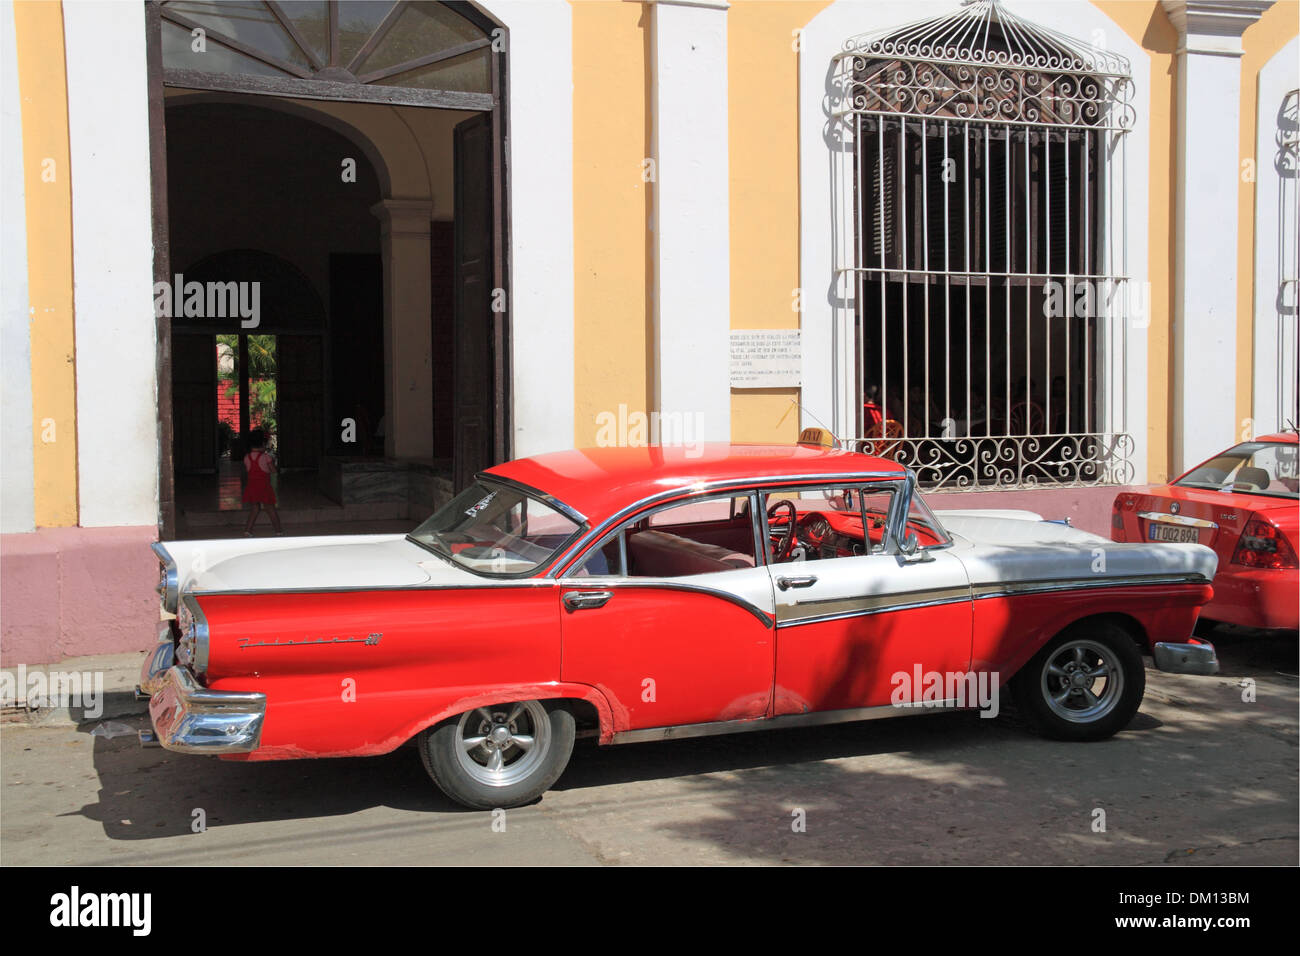 1957 Ford Fairlane 500, Parque Céspedes, Trinidad, la province de Sancti Spiritus, Cuba, mer des Caraïbes, l'Amérique centrale Banque D'Images